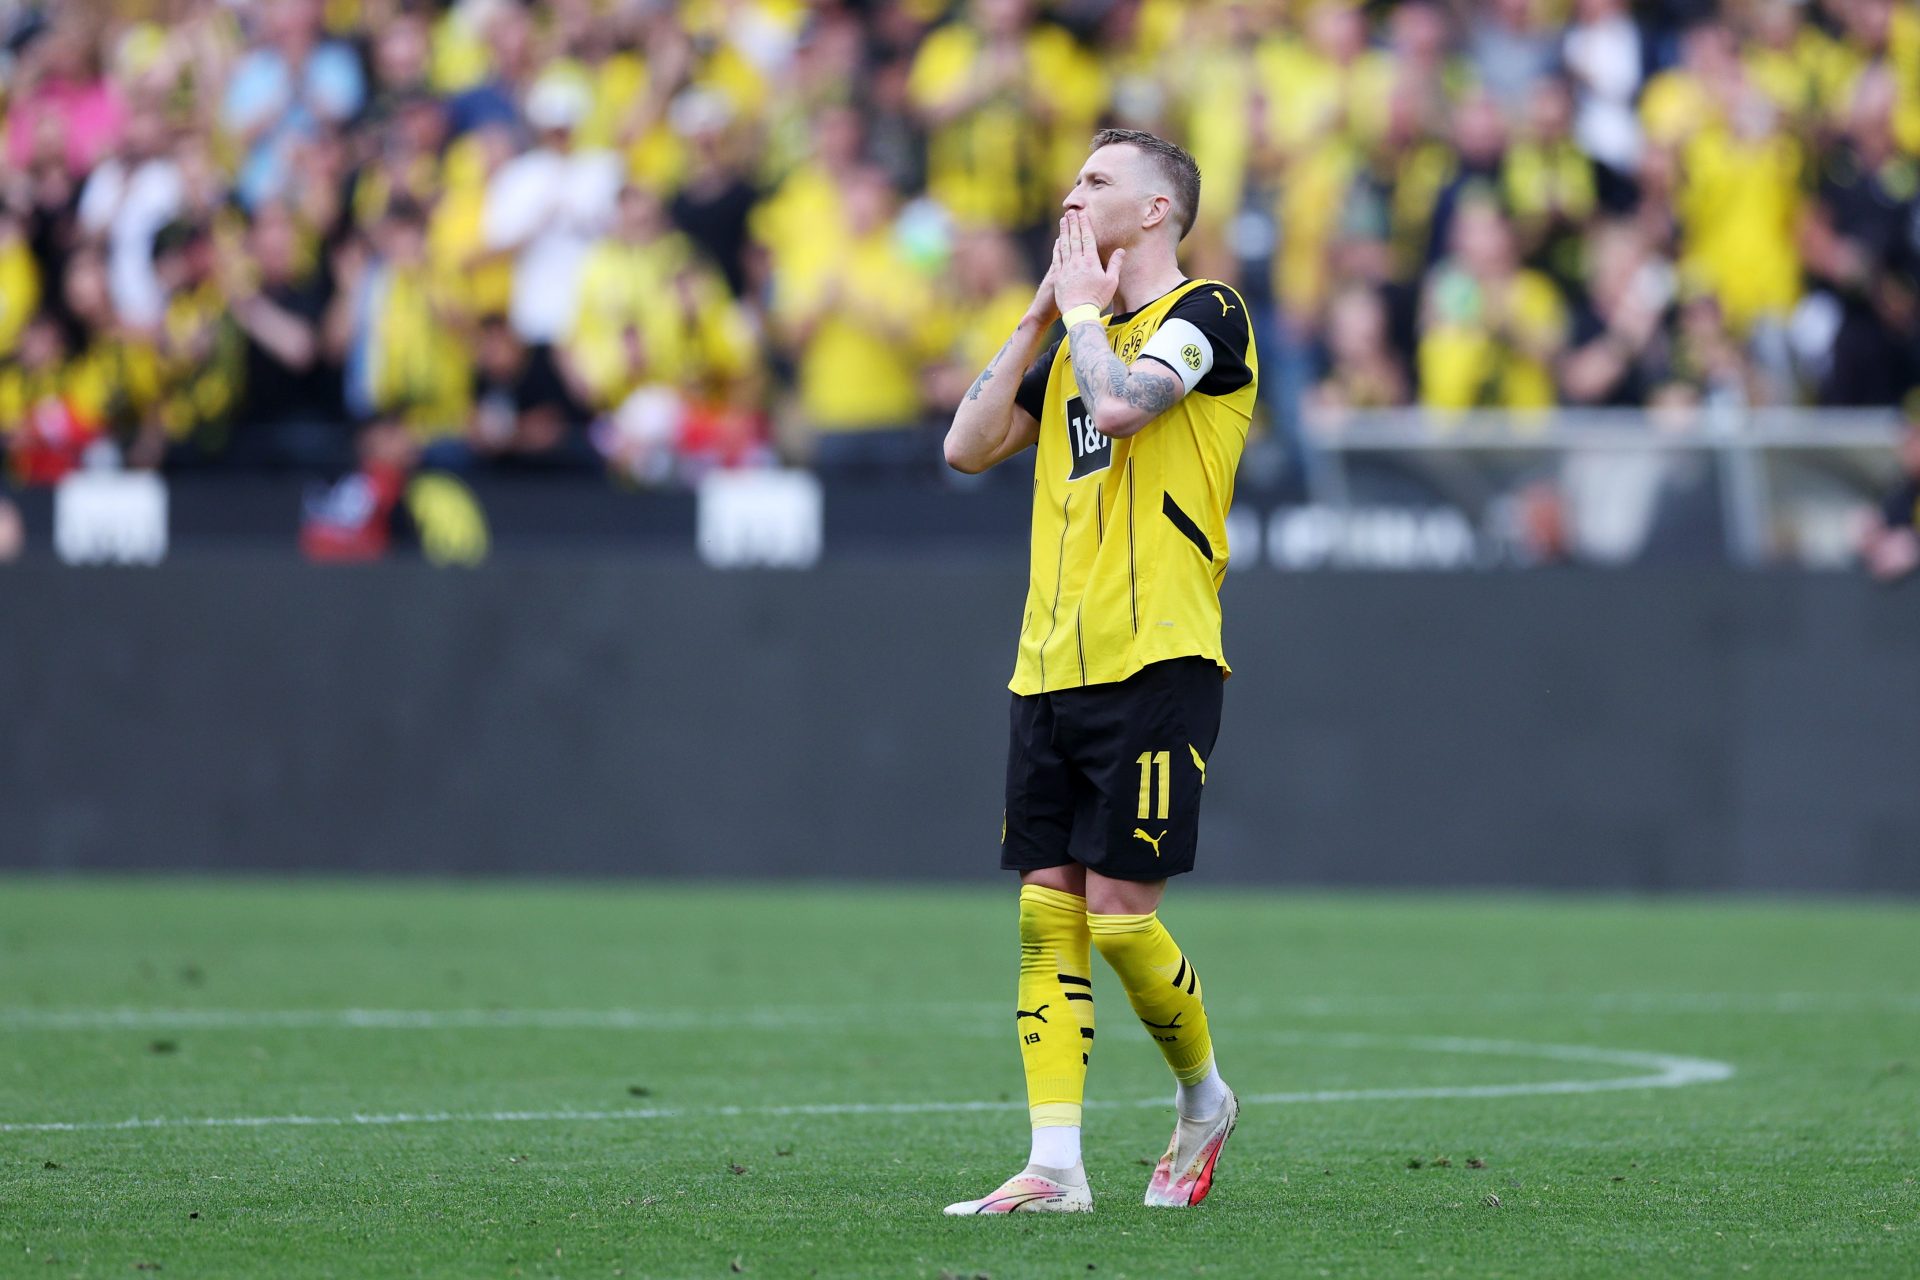 Jogadores para ficar de olho: Dortmund